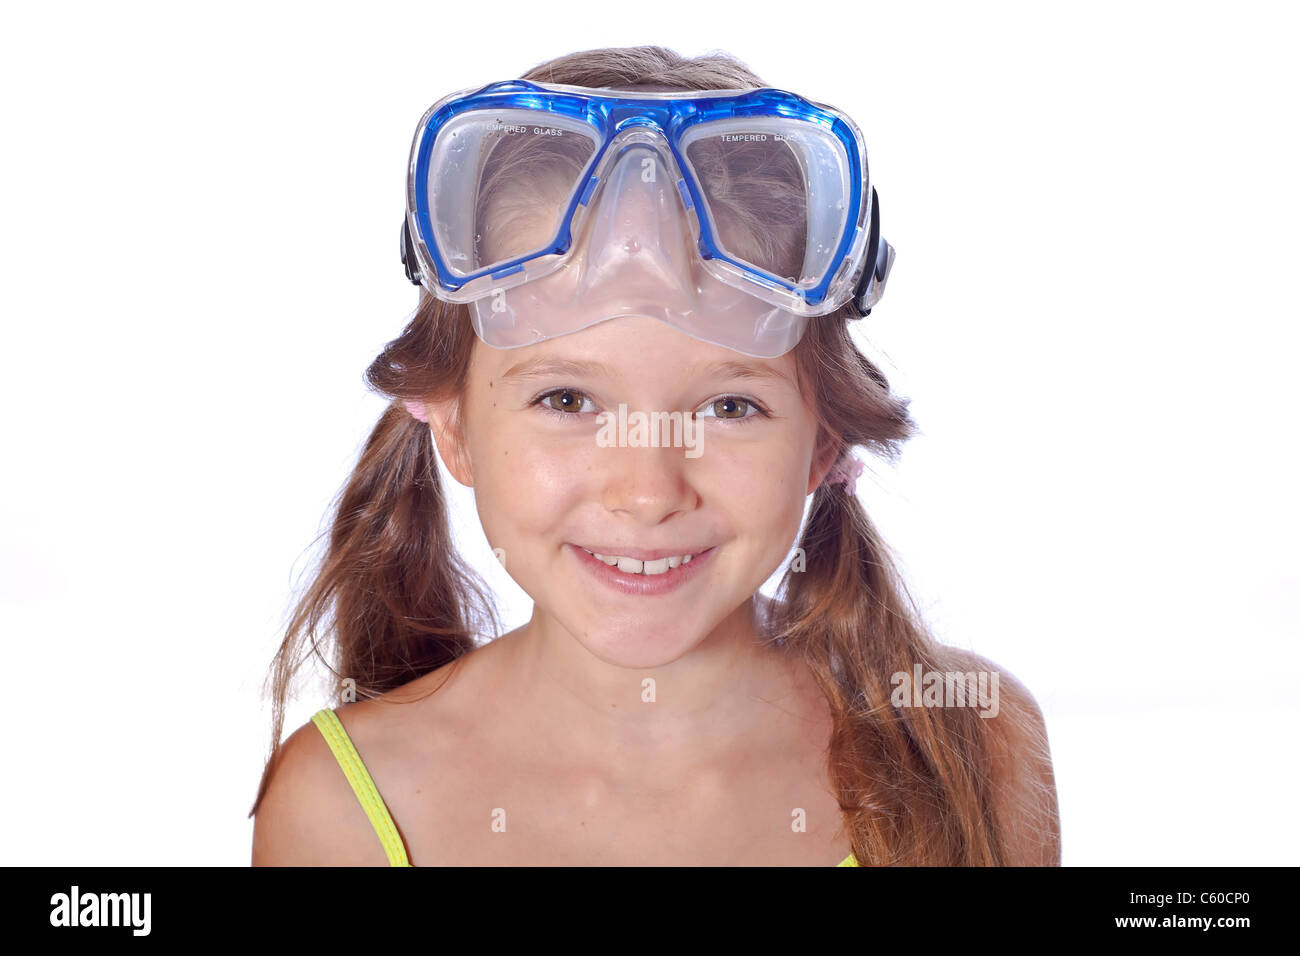 8 anno vecchia ragazza con occhialini Foto Stock